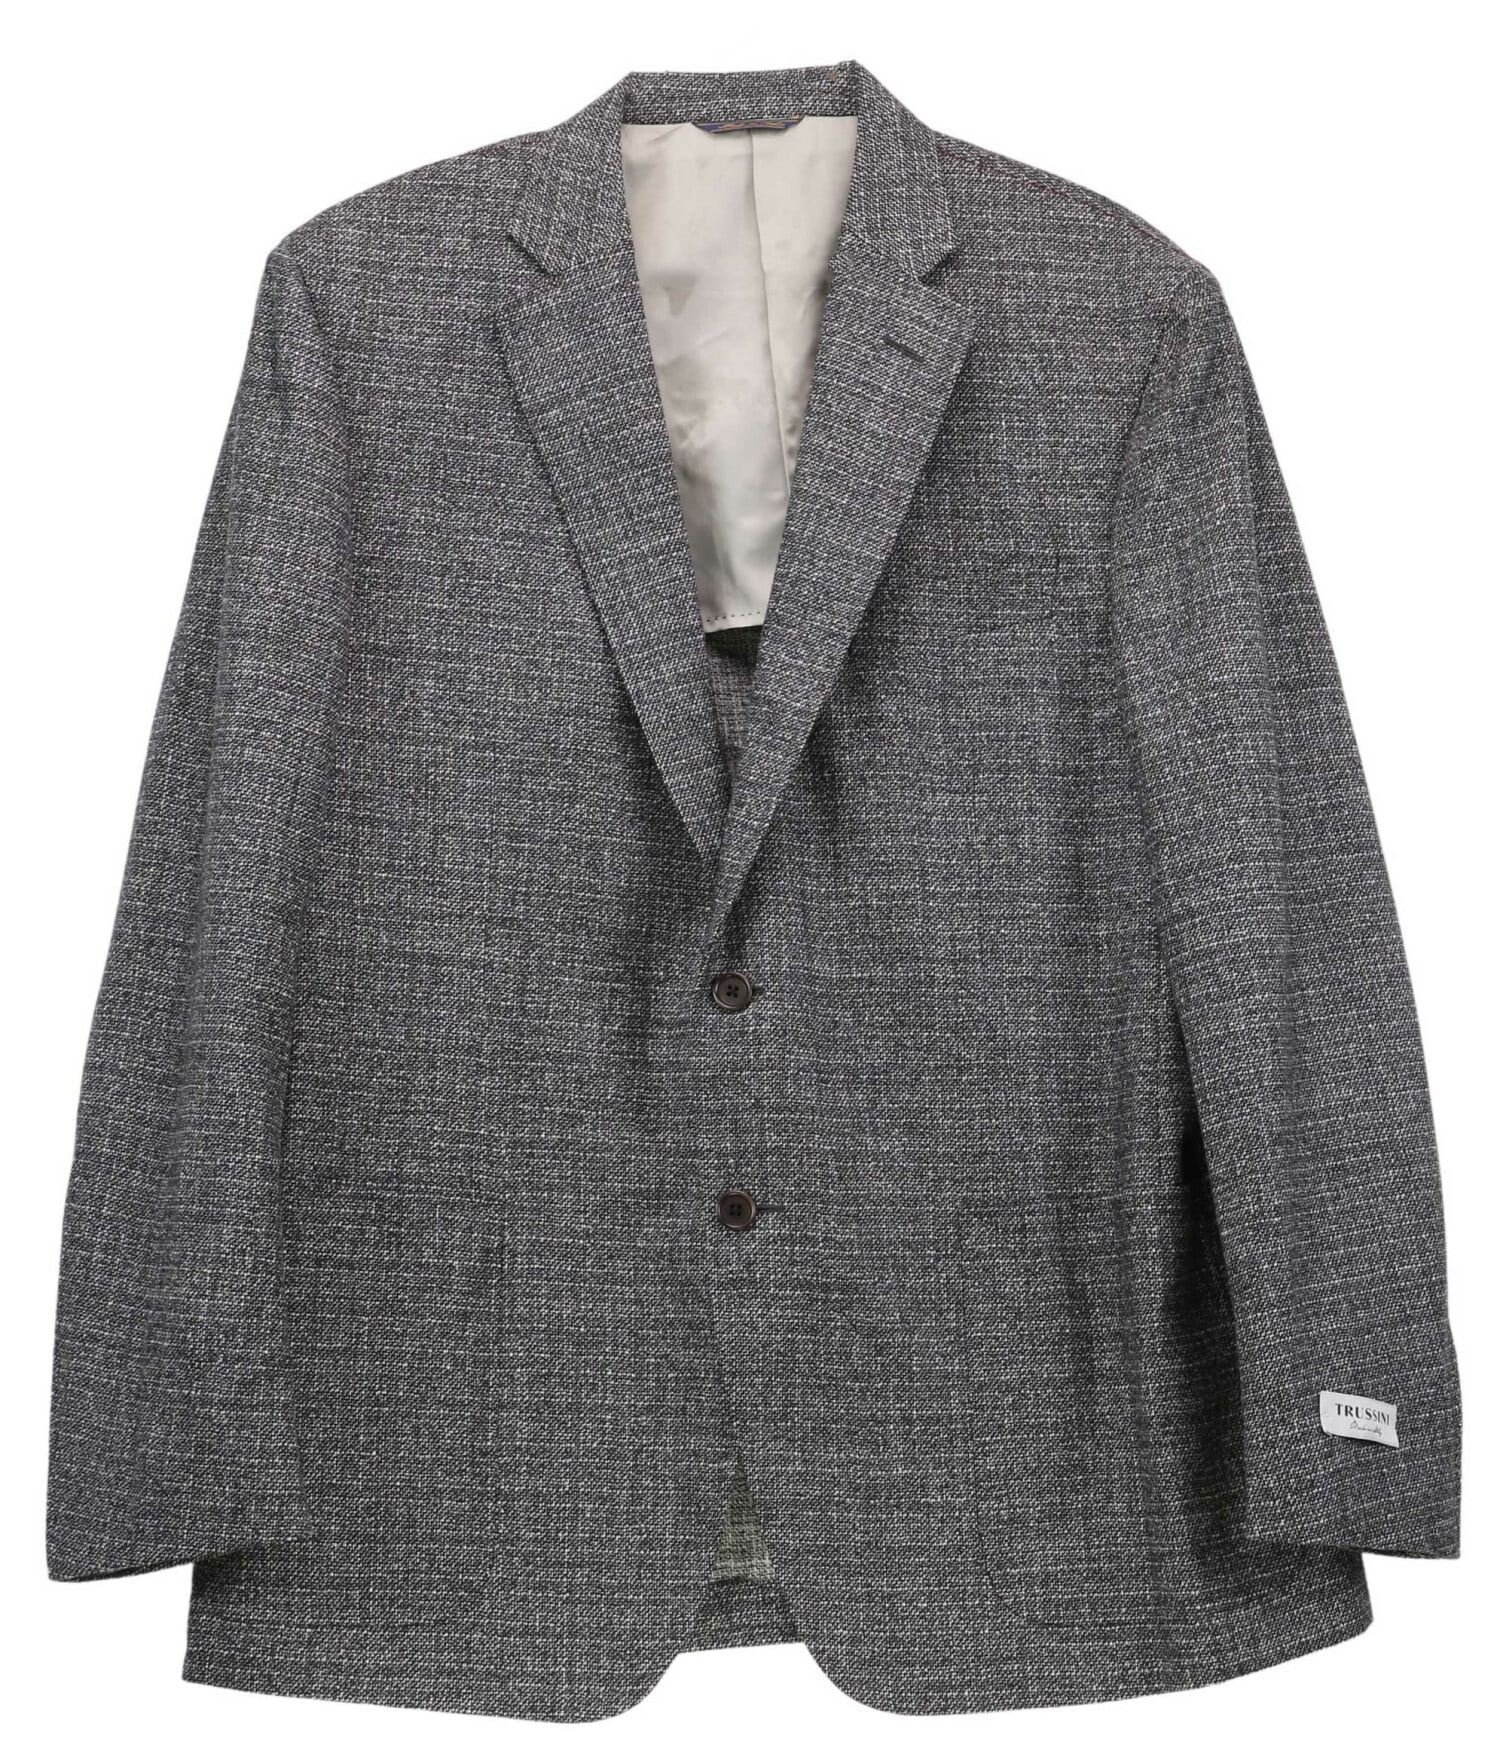 Trussini Men's Grey/ Black/ White Wool Suit Jacket Sport Coats & Blazer ...